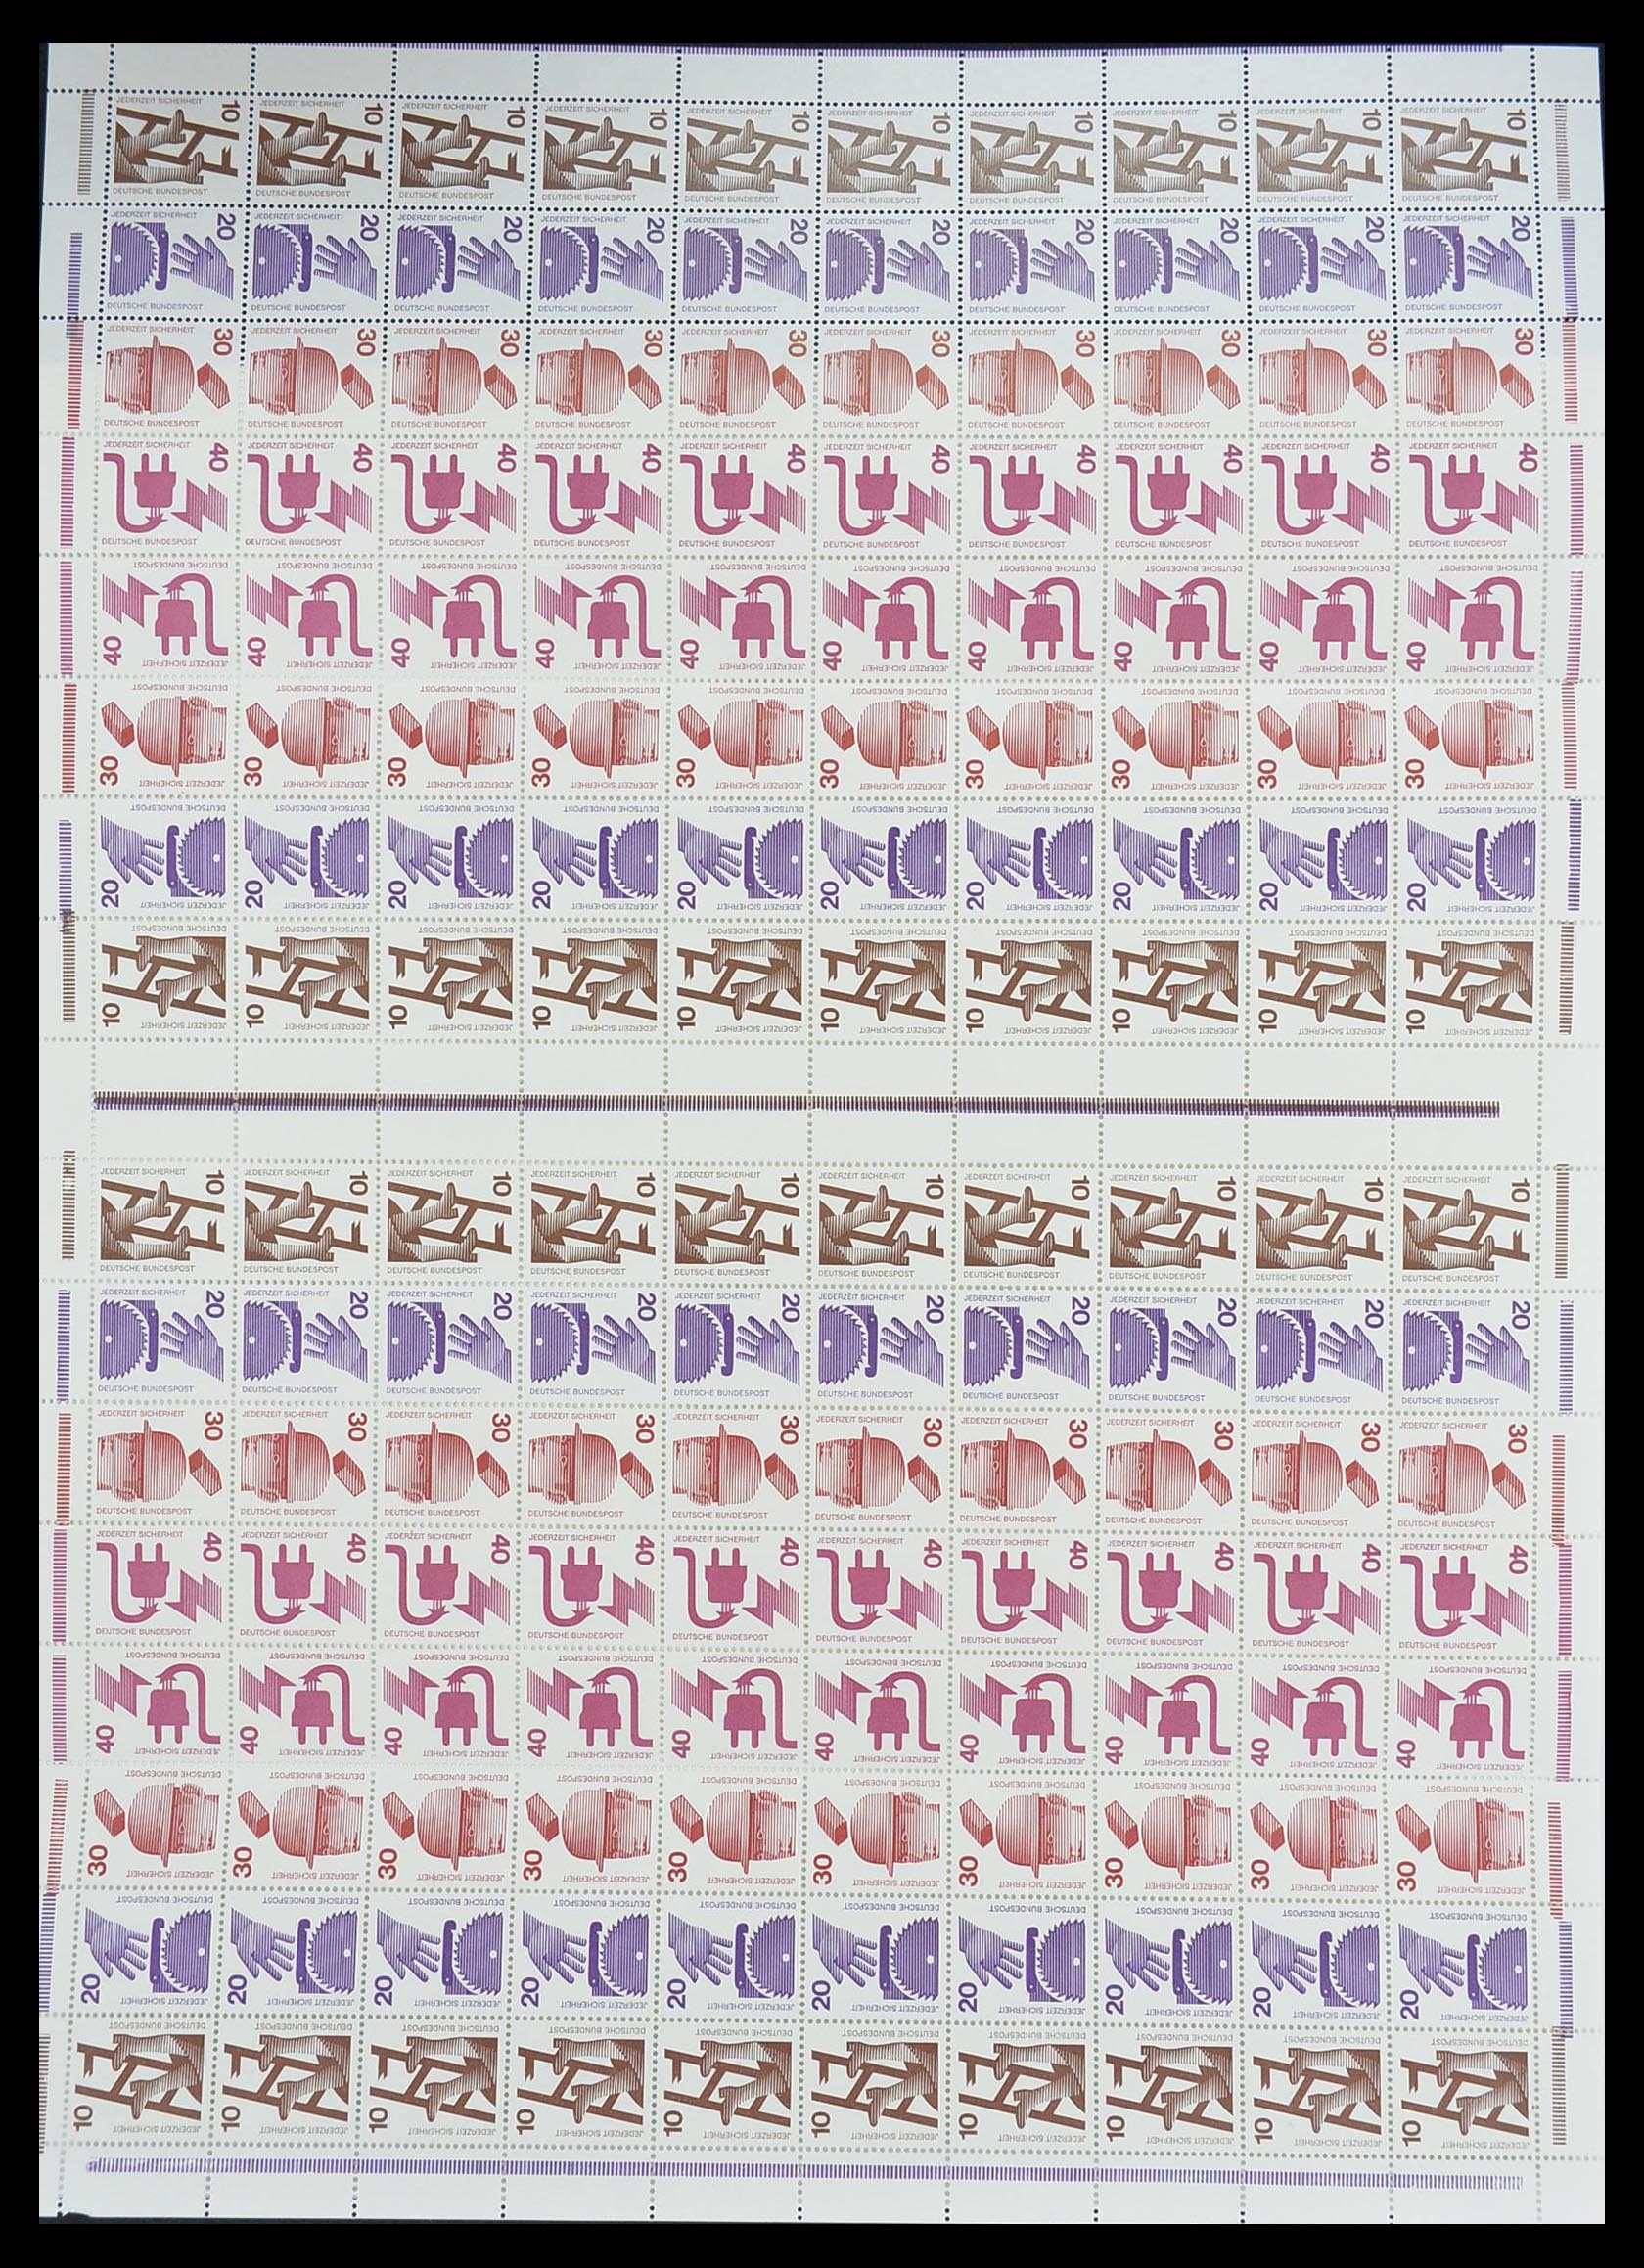 33753 001 - Stamp collection 33753 Bund and Berlin markenheftchenbogen 1966-1973.